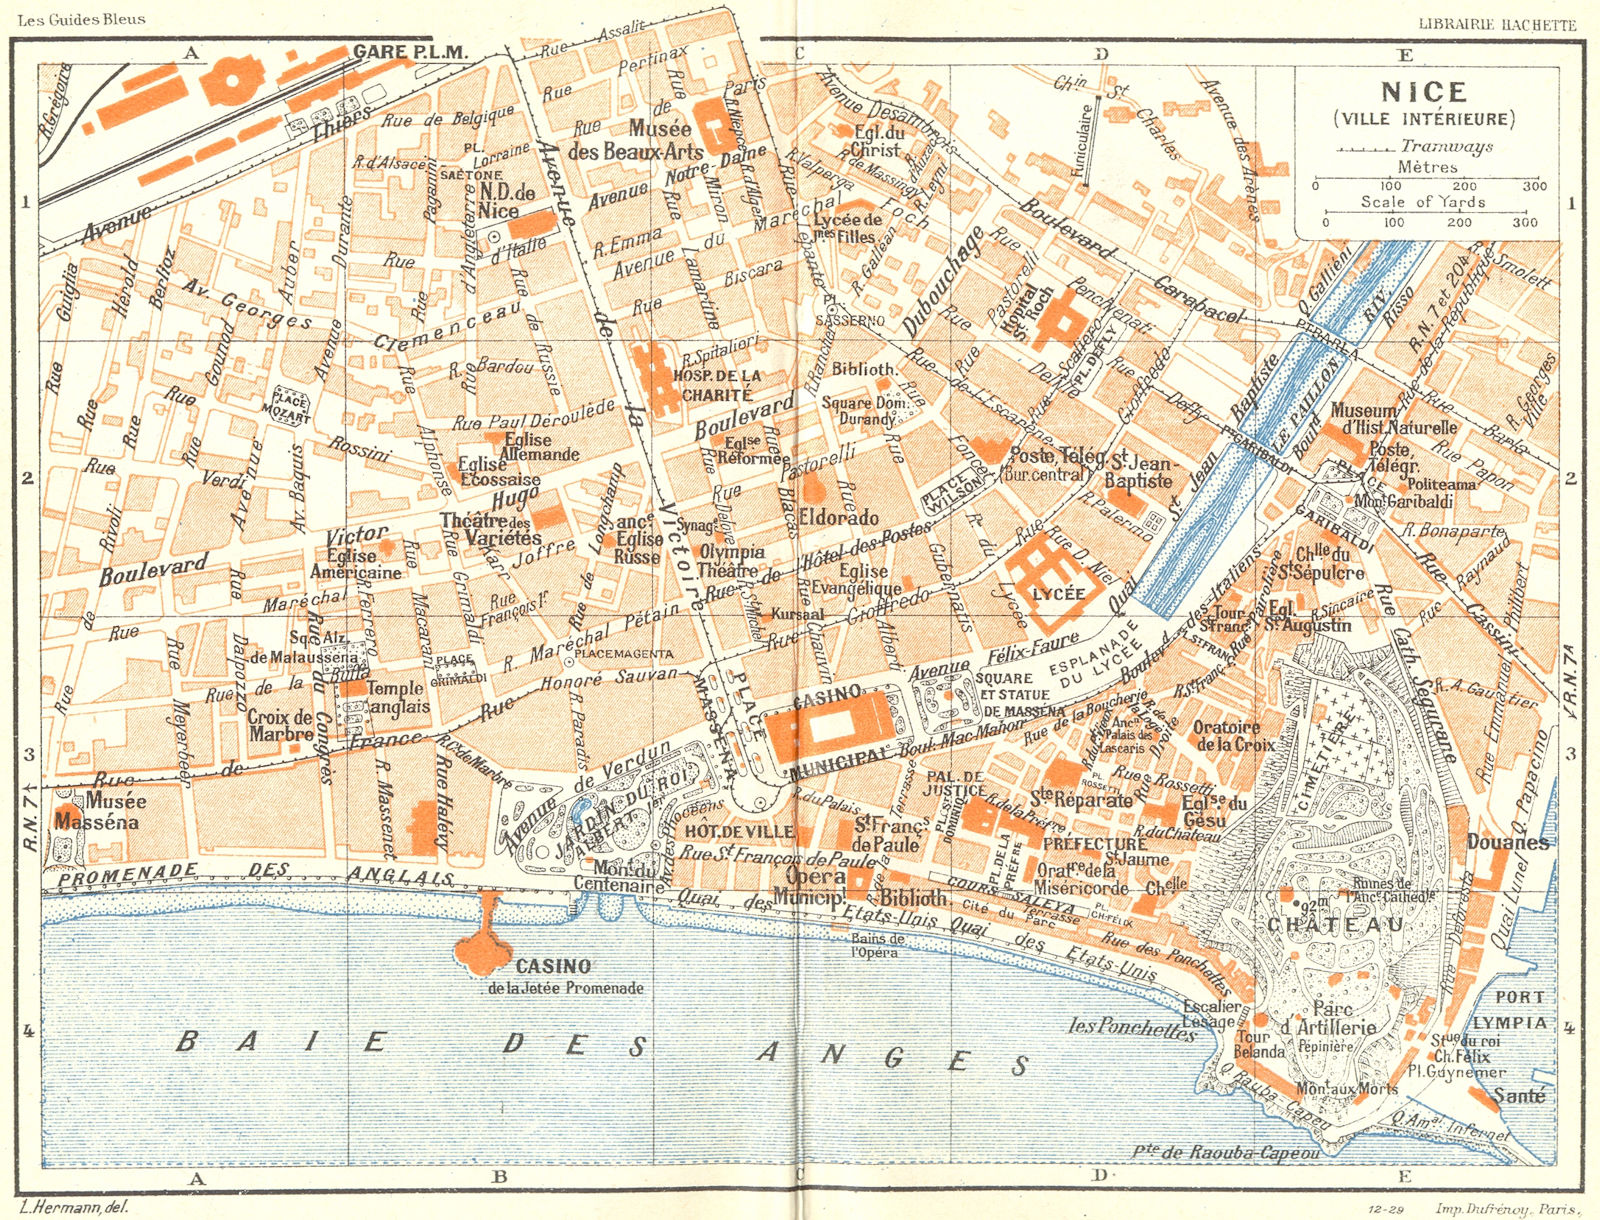 COTE D'AZUR. Nice(Ville Interieure) 1926 old vintage map plan chart